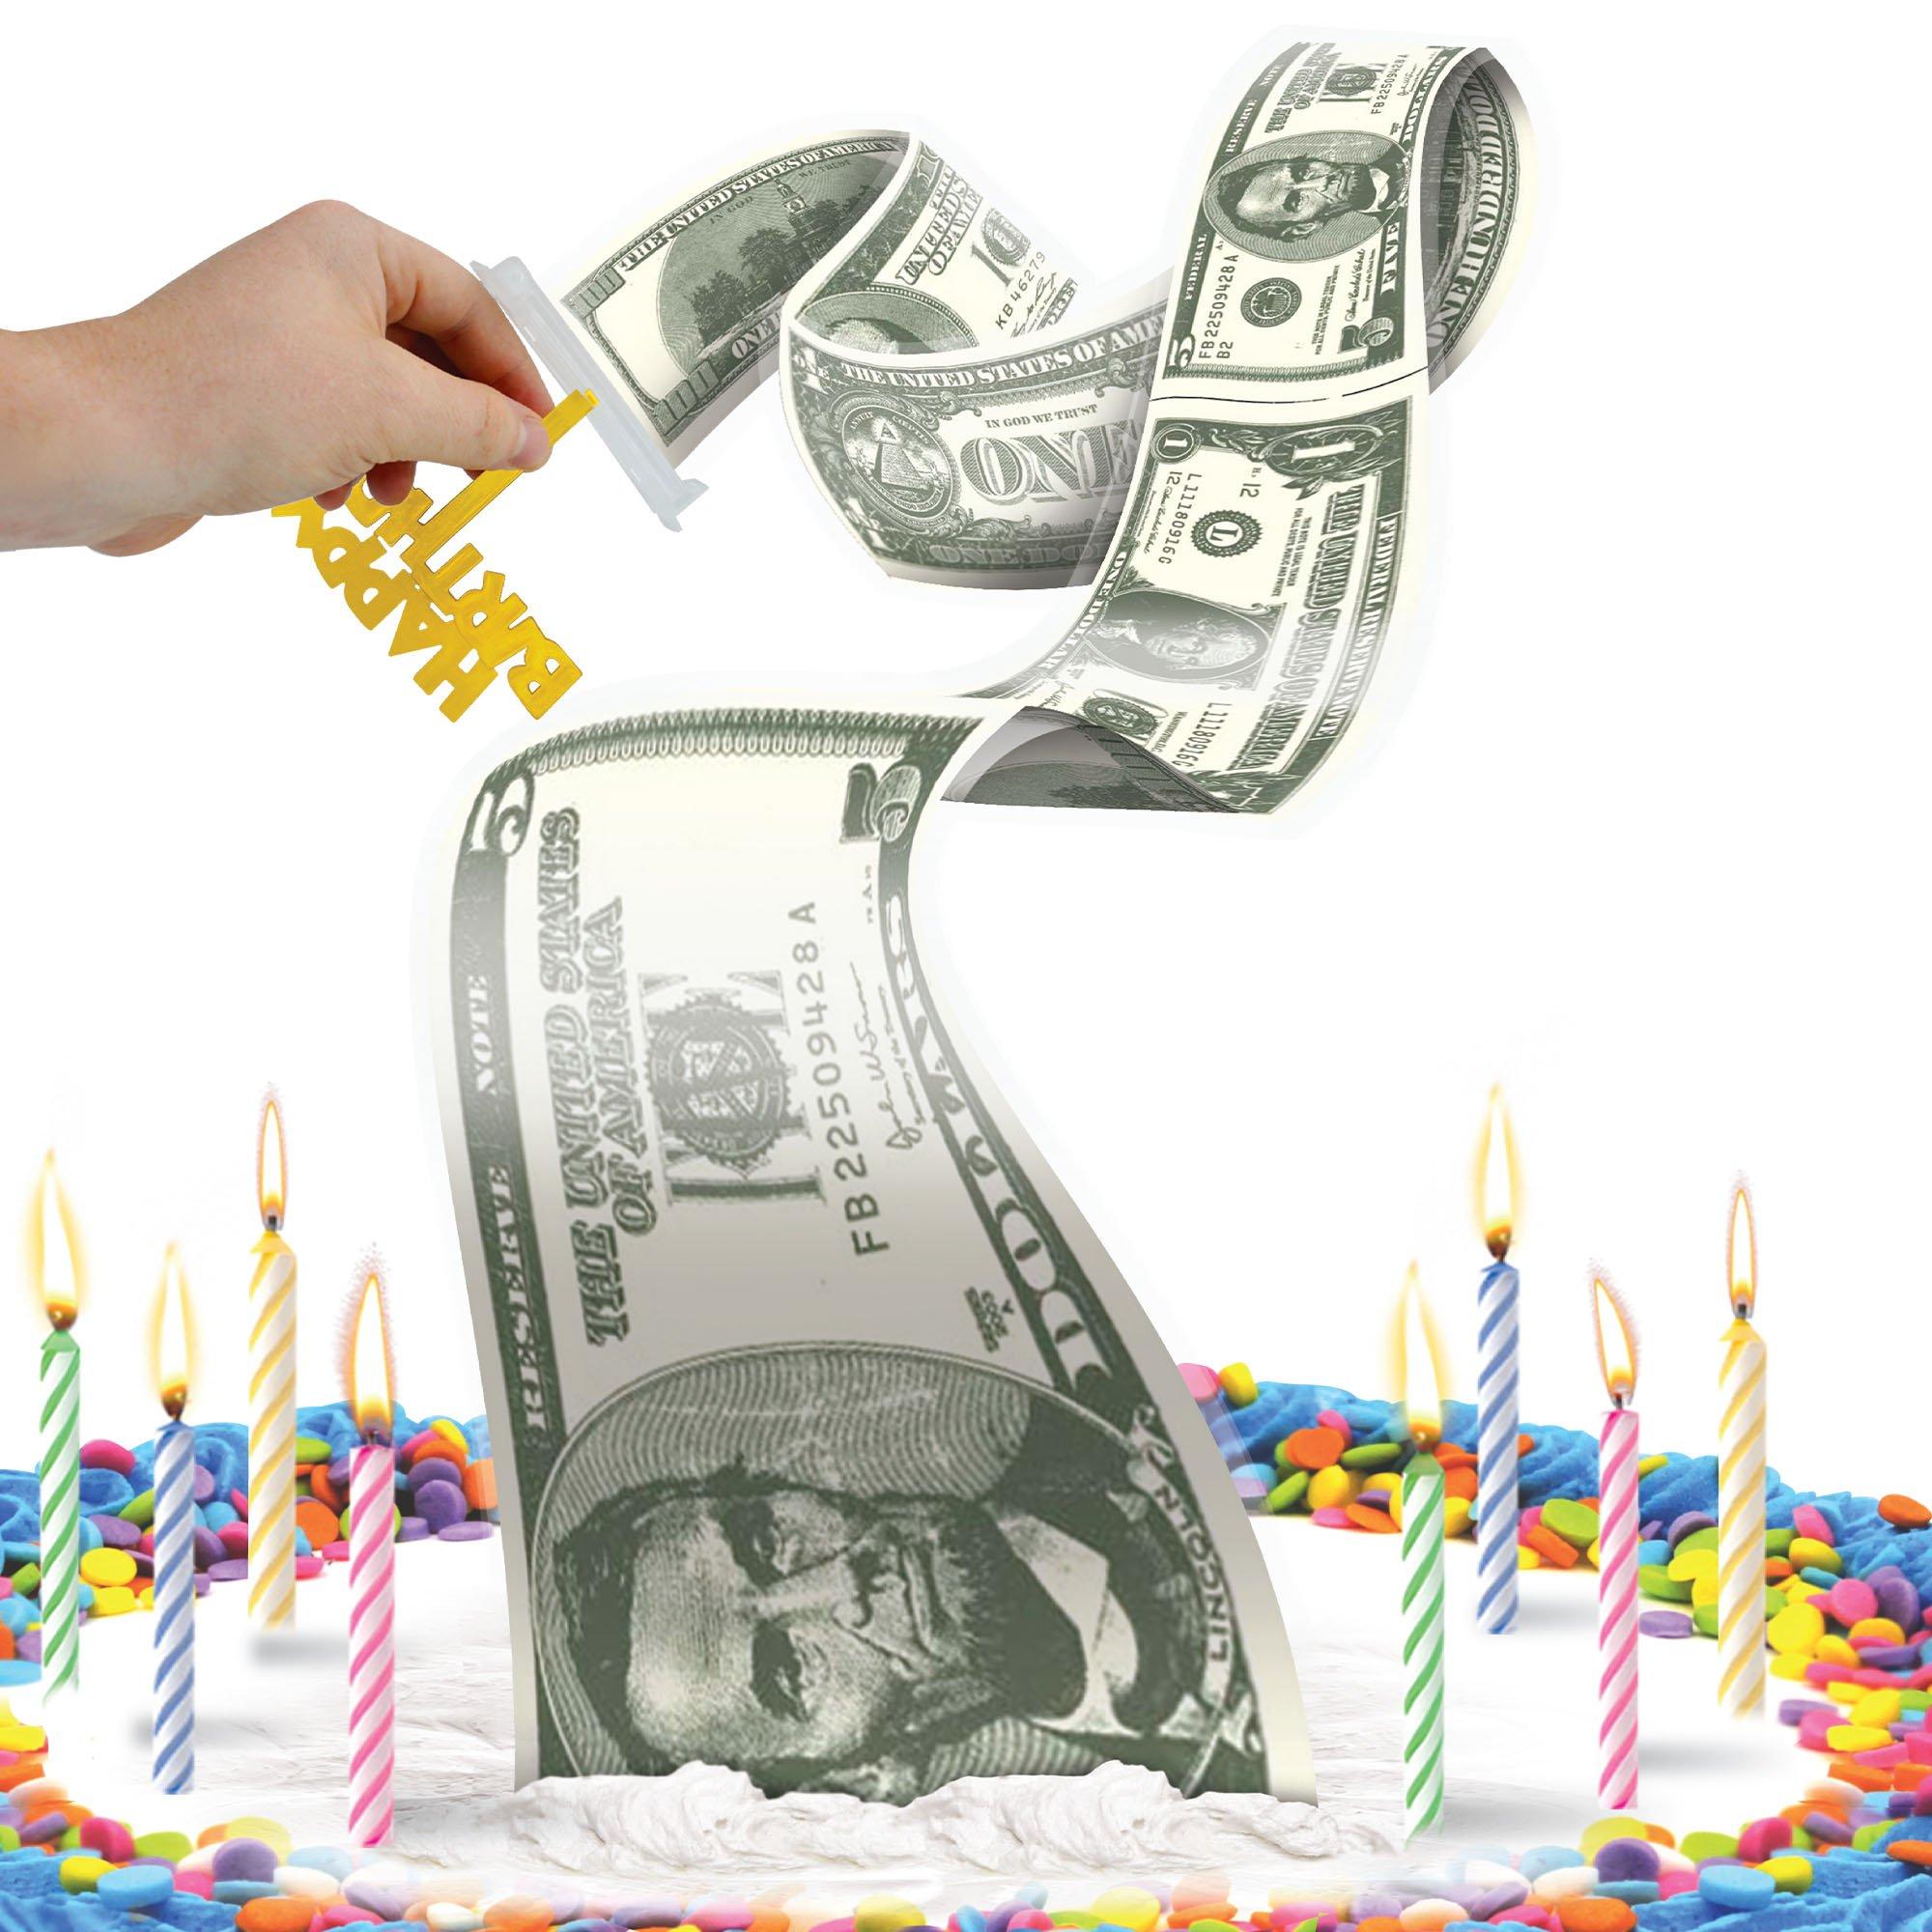 LV Money Pulling Cake!